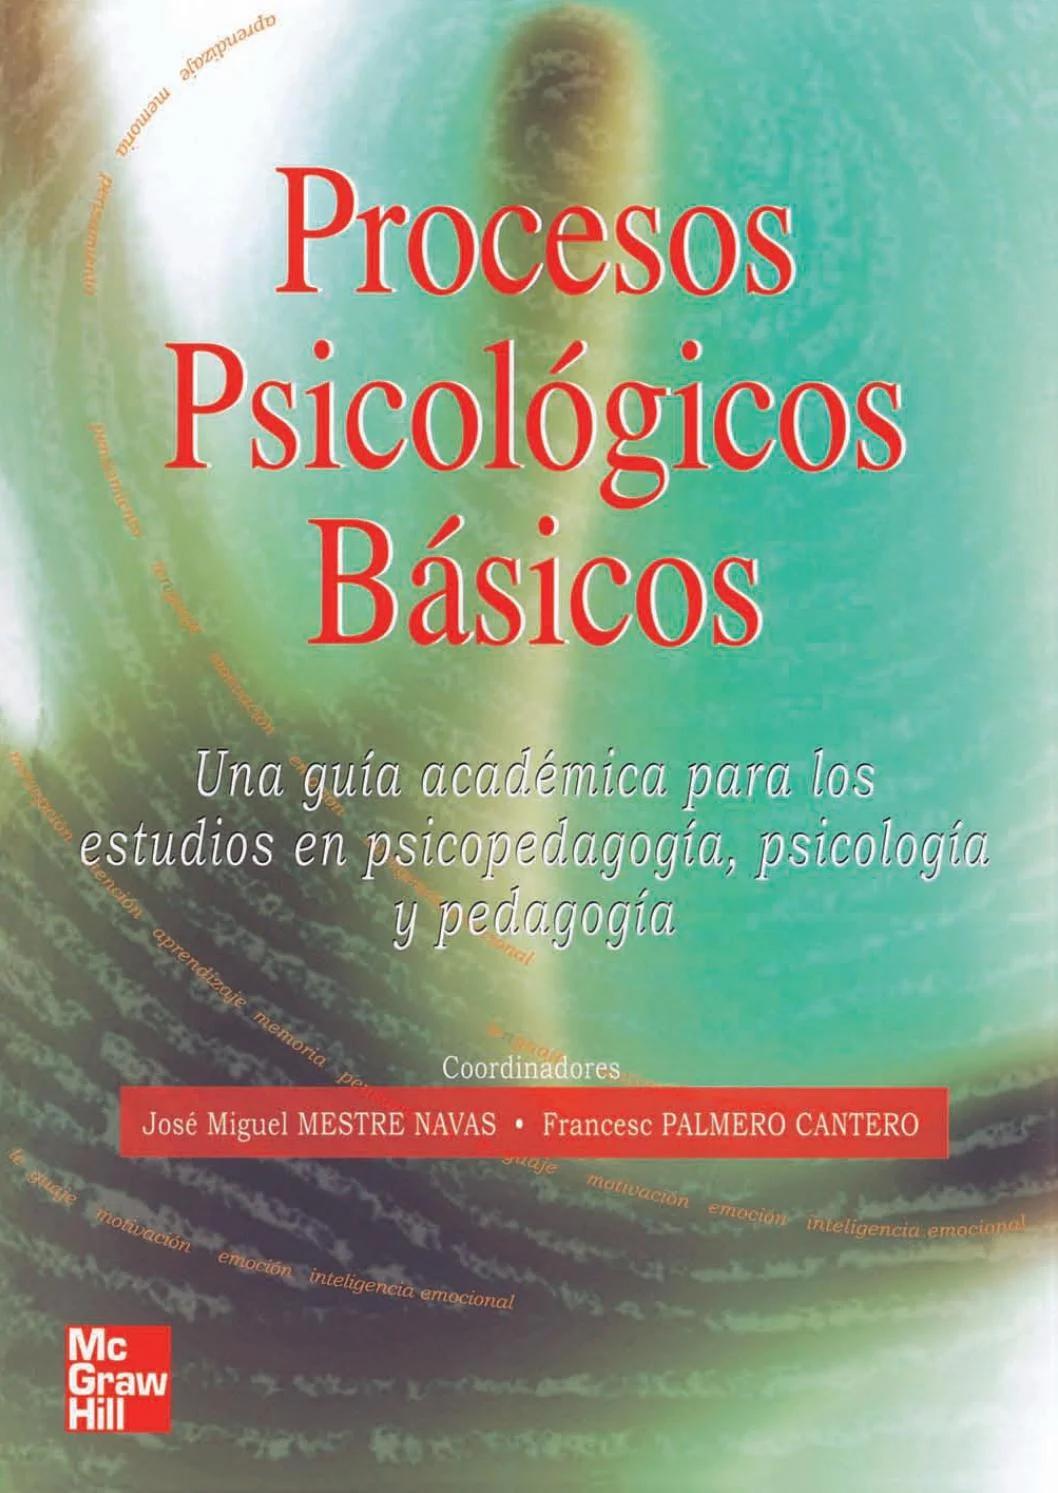 procesos psicologicos basicos resumen - Cuáles son los 5 procesos psicológicos